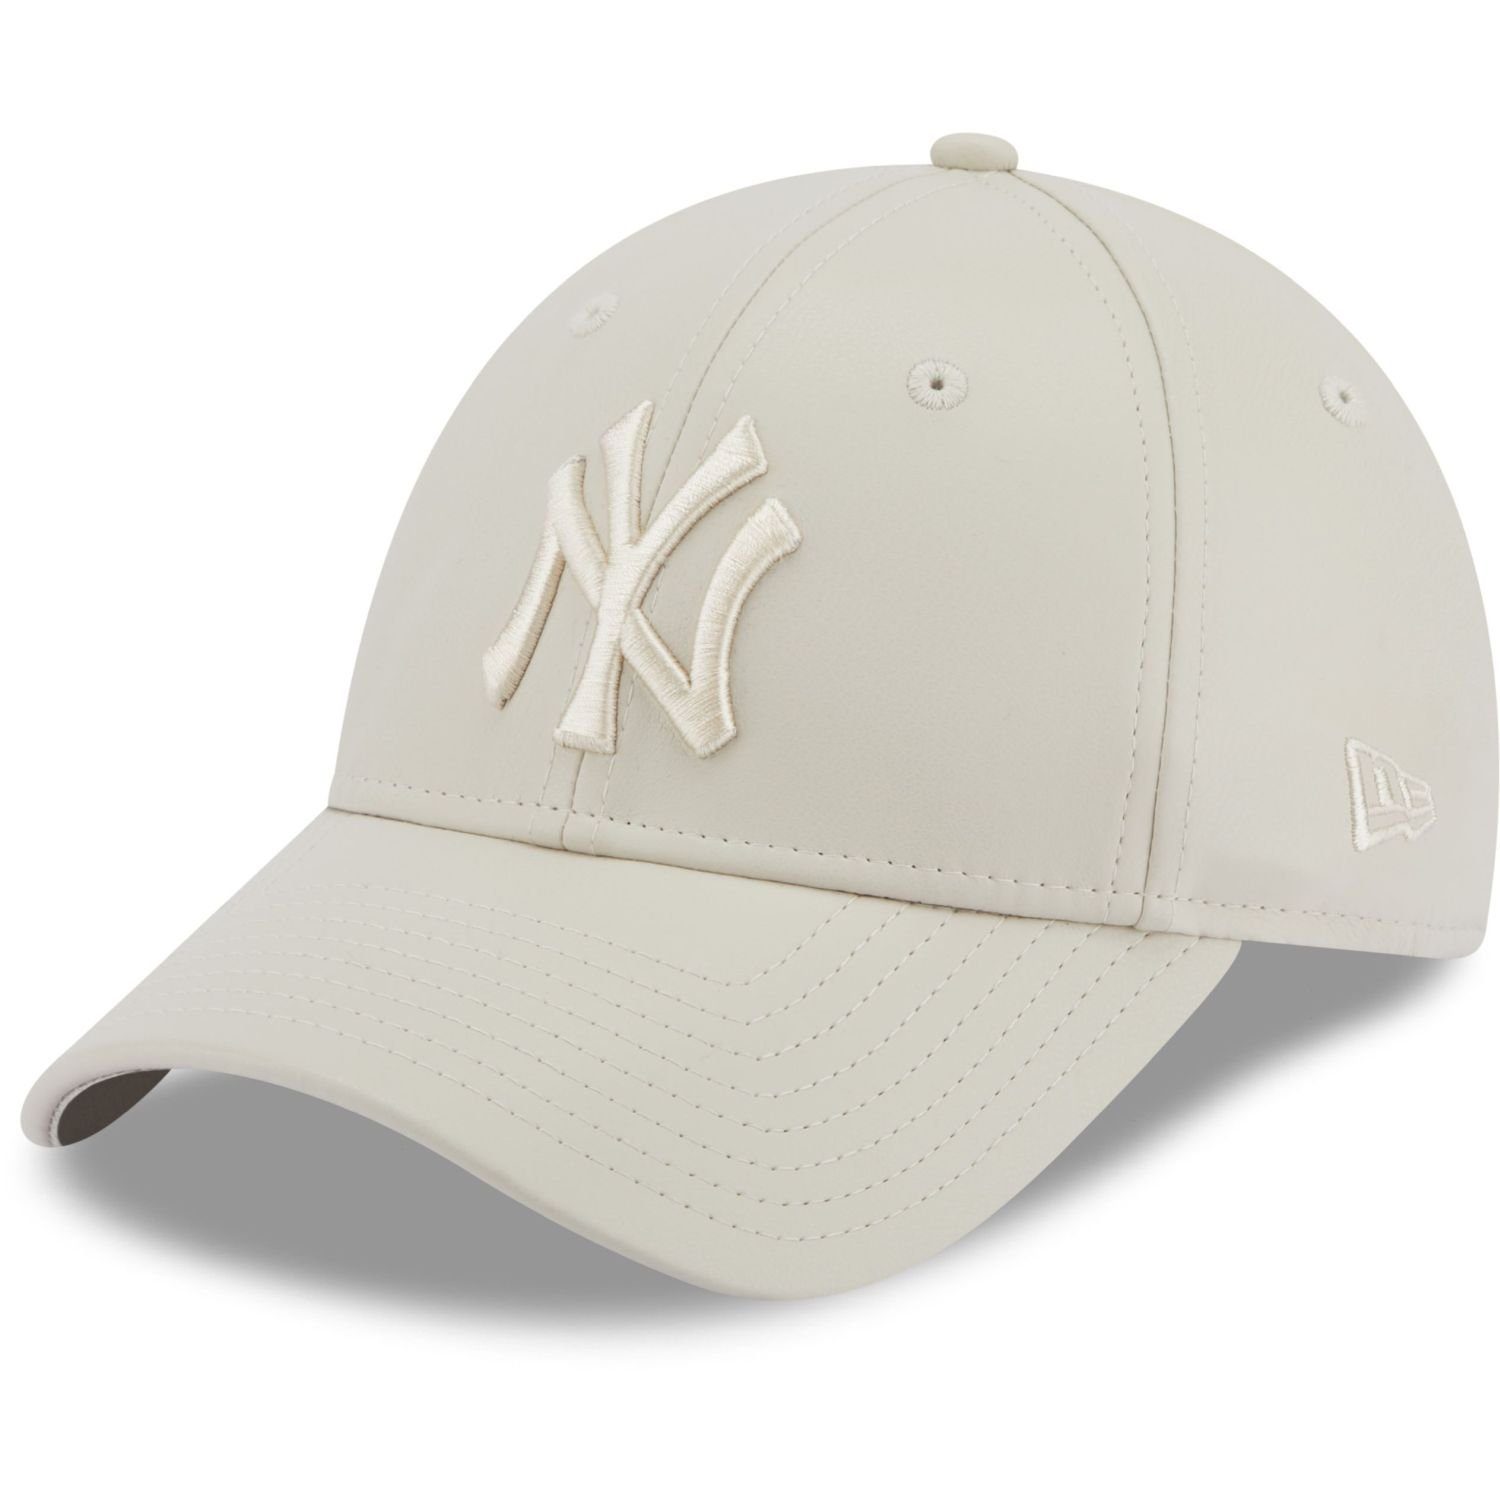 Baseball 9Forty KUNSTLEDER Cap New Era York New Yankees